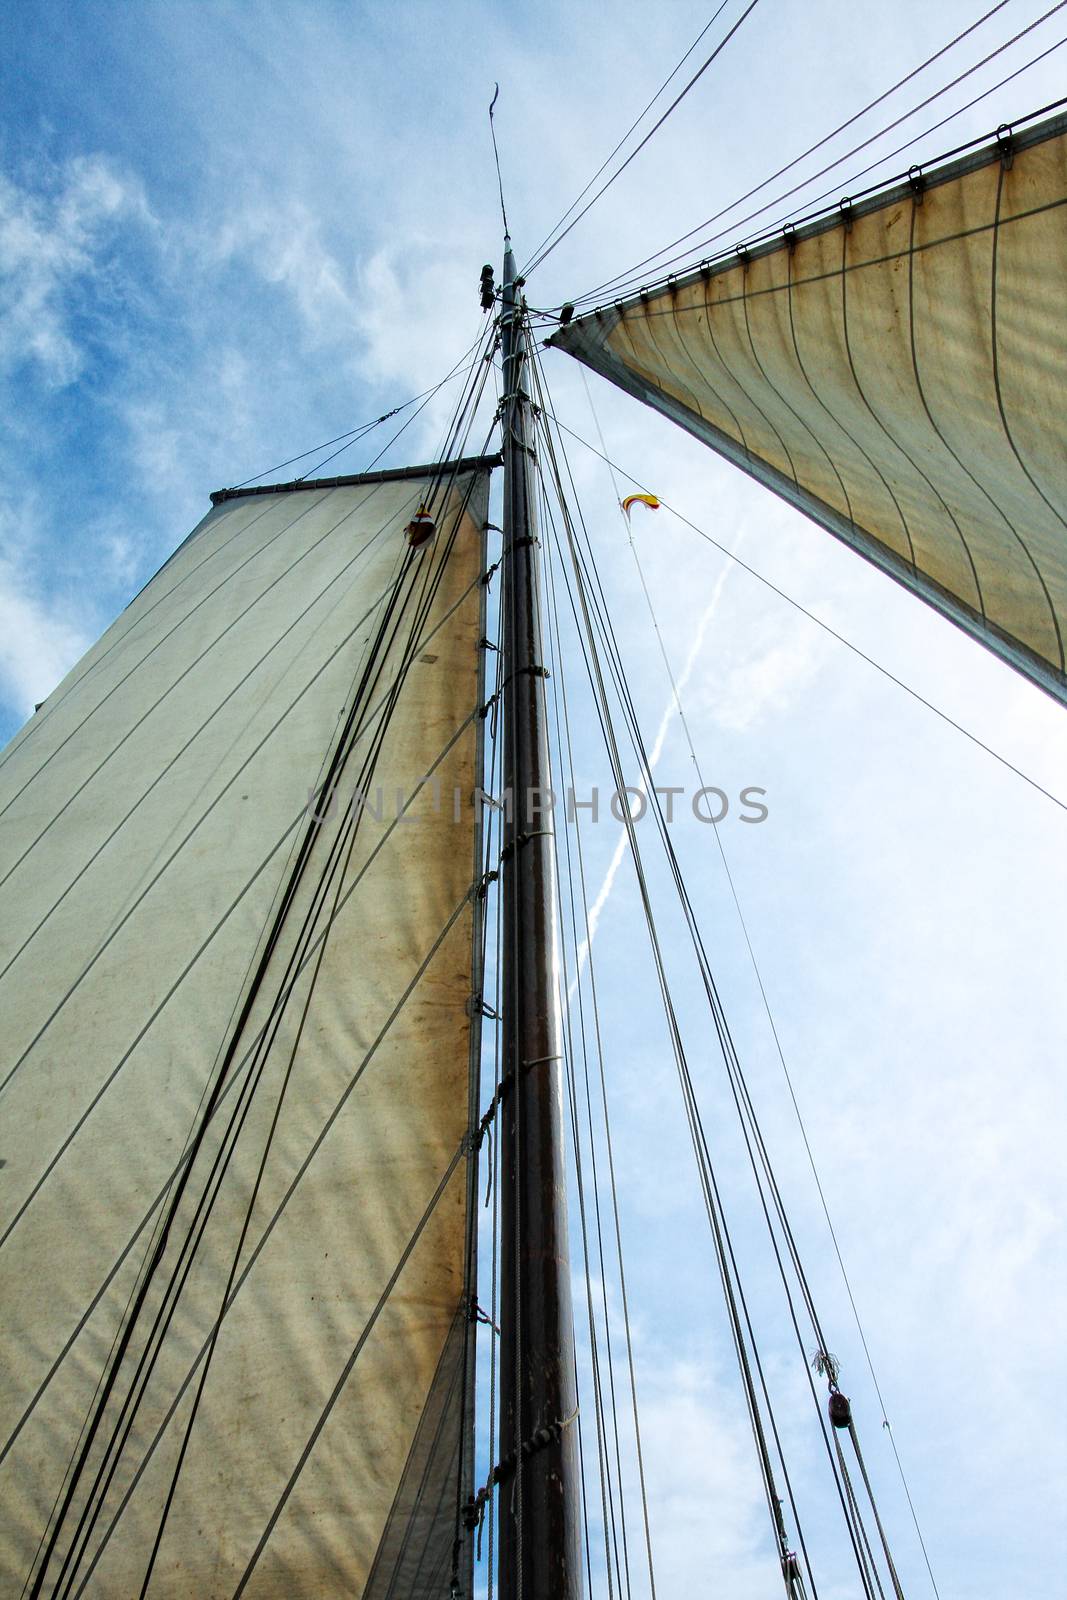 Sailing boat by dbmedia